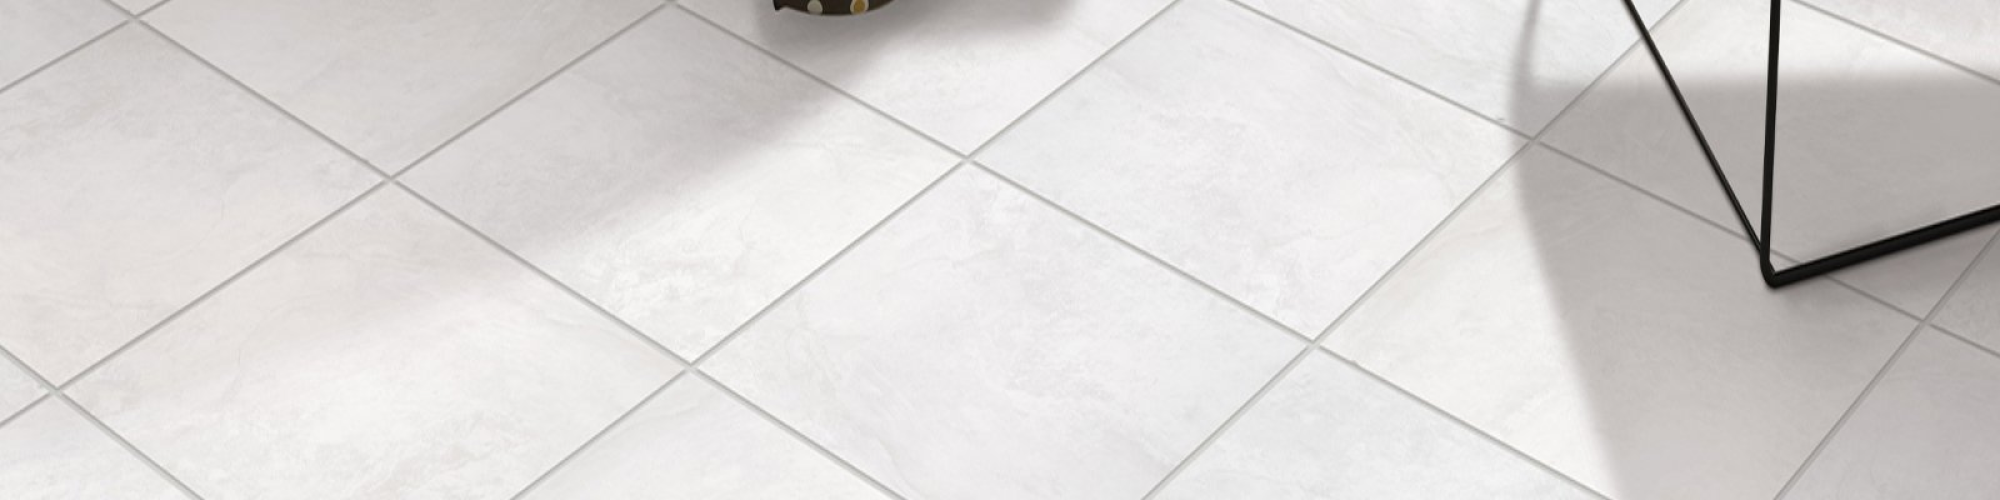 Should you choose ceramic & porcelain tile?